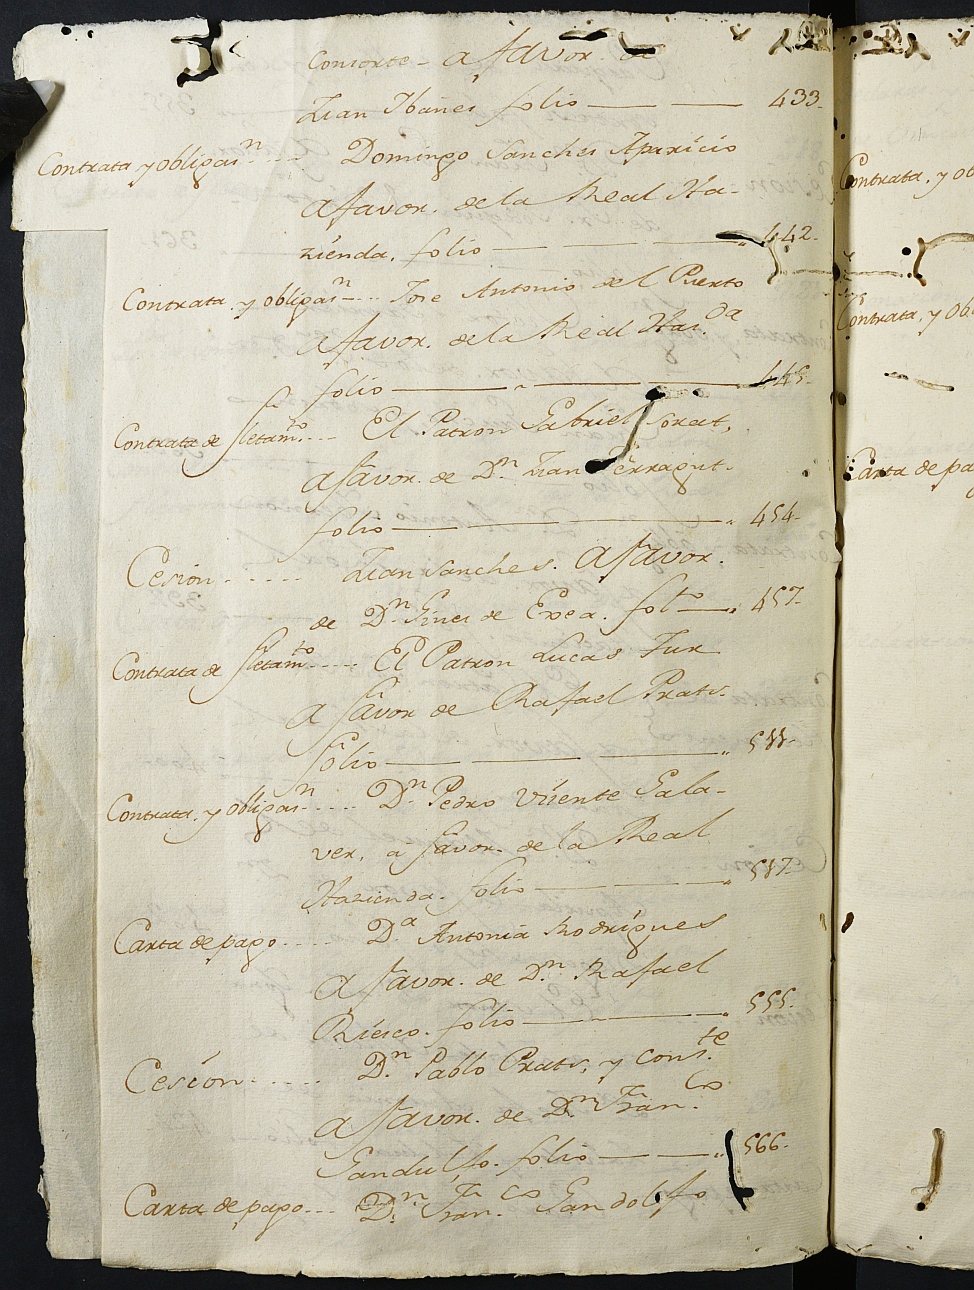 Registro de Agustín Carlos Roca, Cartagena: Escribano de Marina. Año 1789.